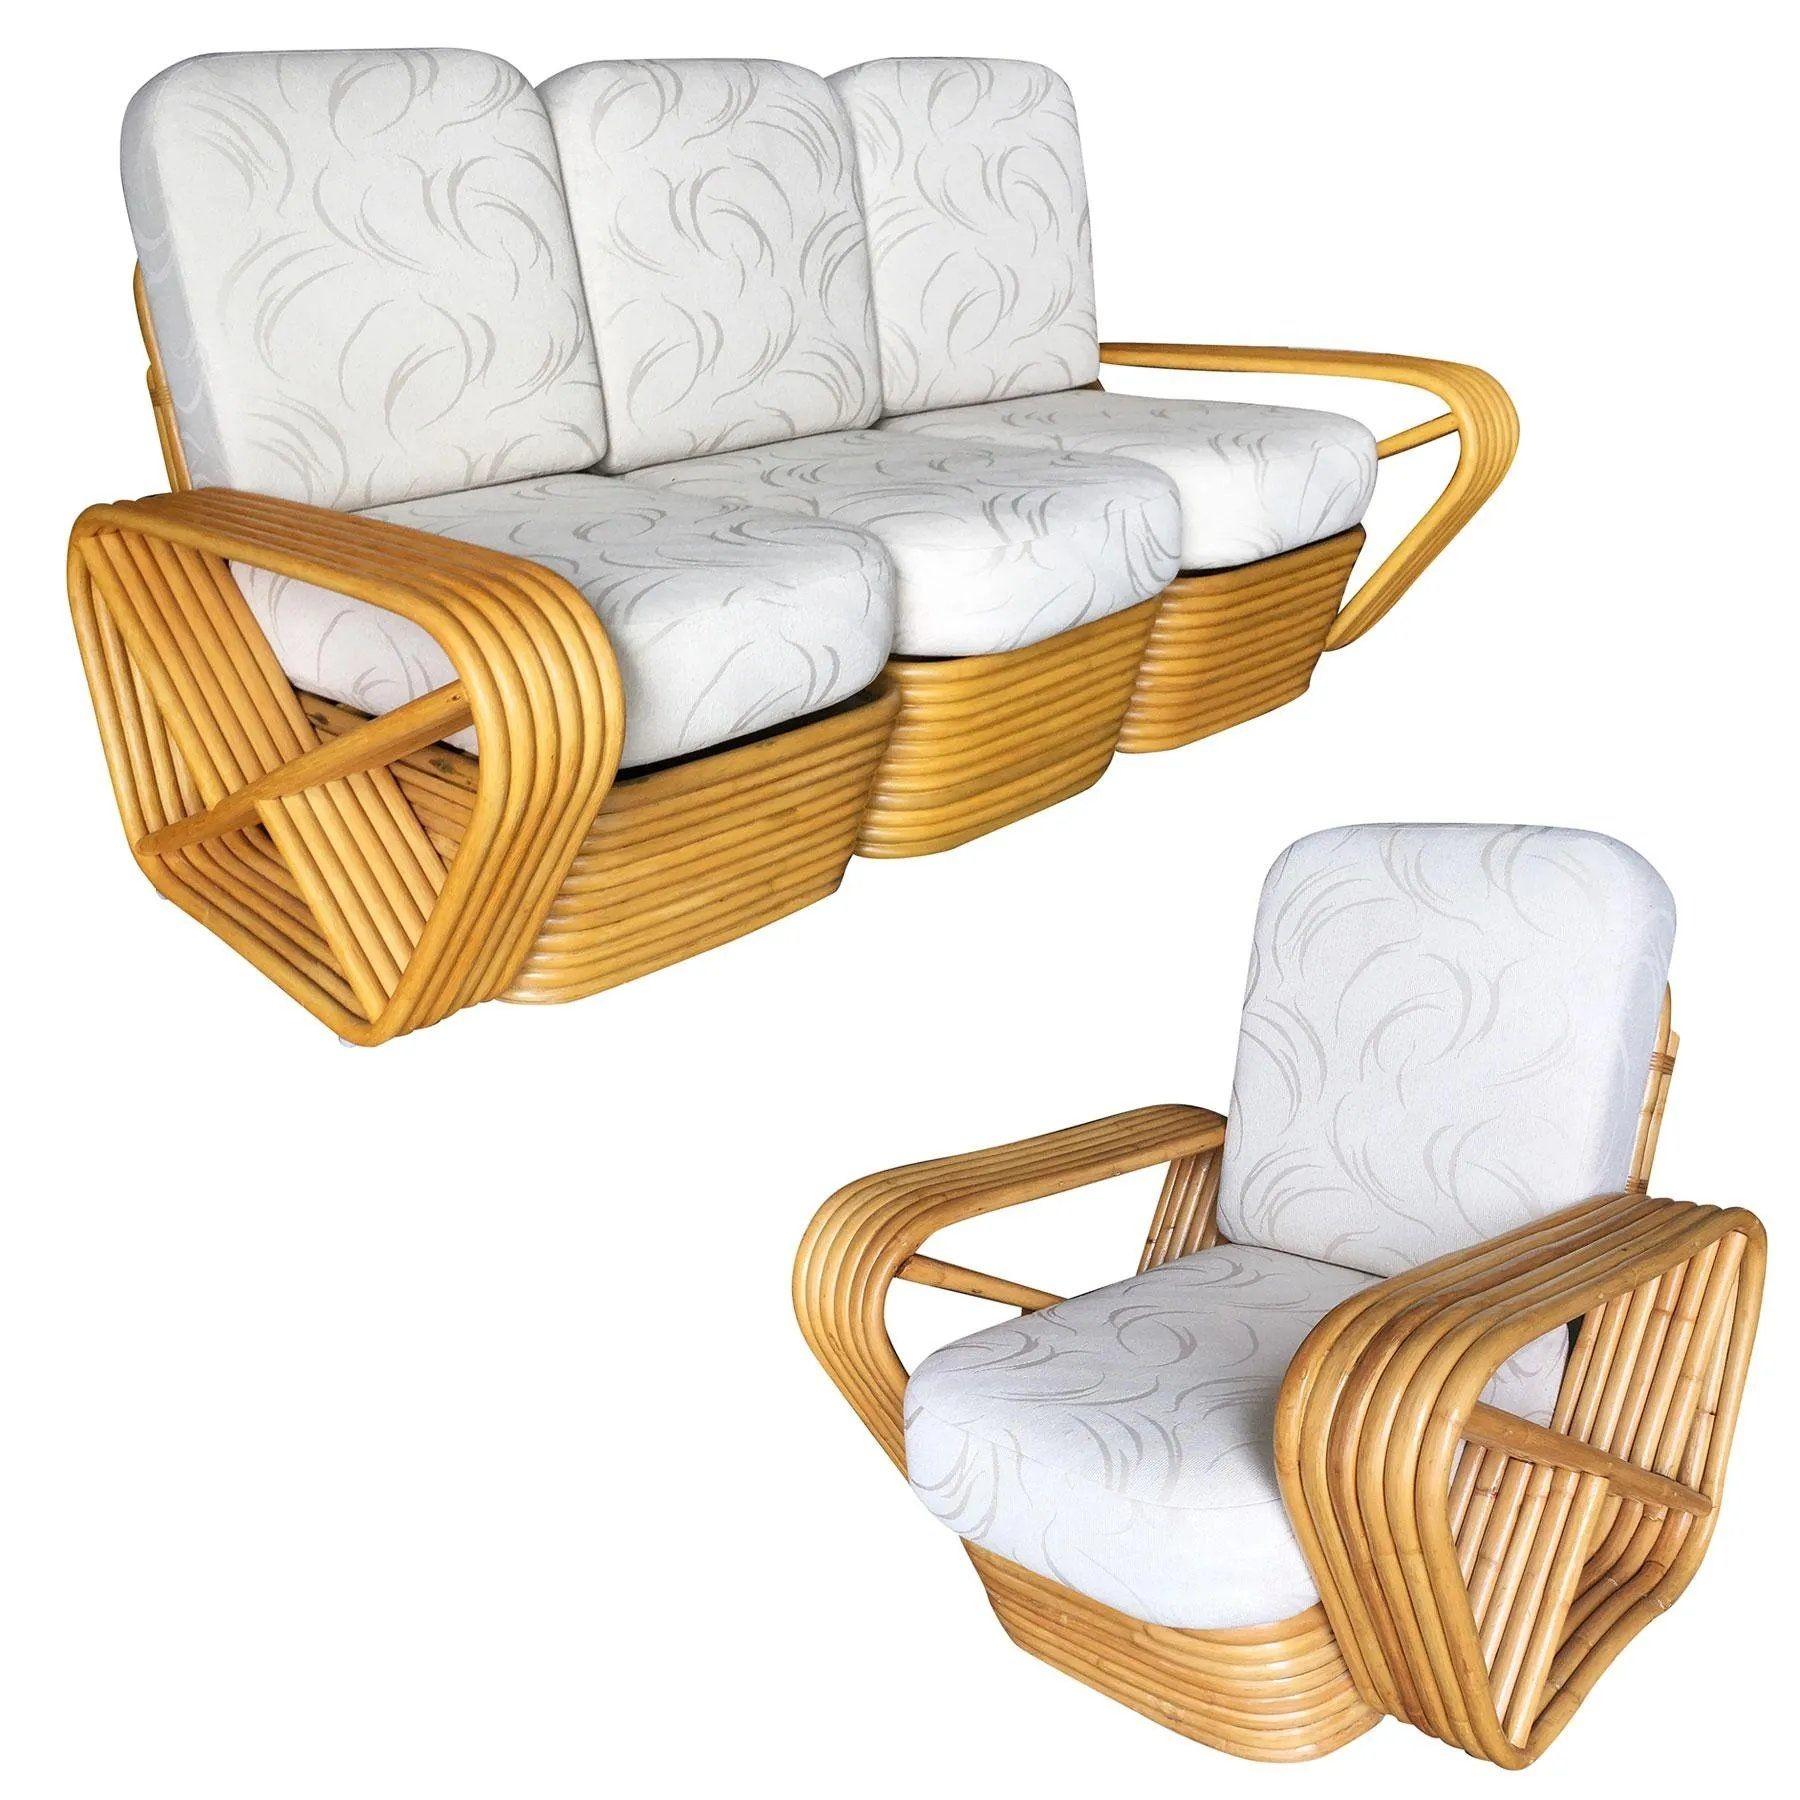 Ensemble de salon Art Déco en rotin comprenant un canapé sectionnel et une chaise longue assortis. Tous deux sont dotés des célèbres bras latéraux en bretzel carré à six brins et d'une base en rotin empilé, conçus à l'origine par Paul Frankl. Les